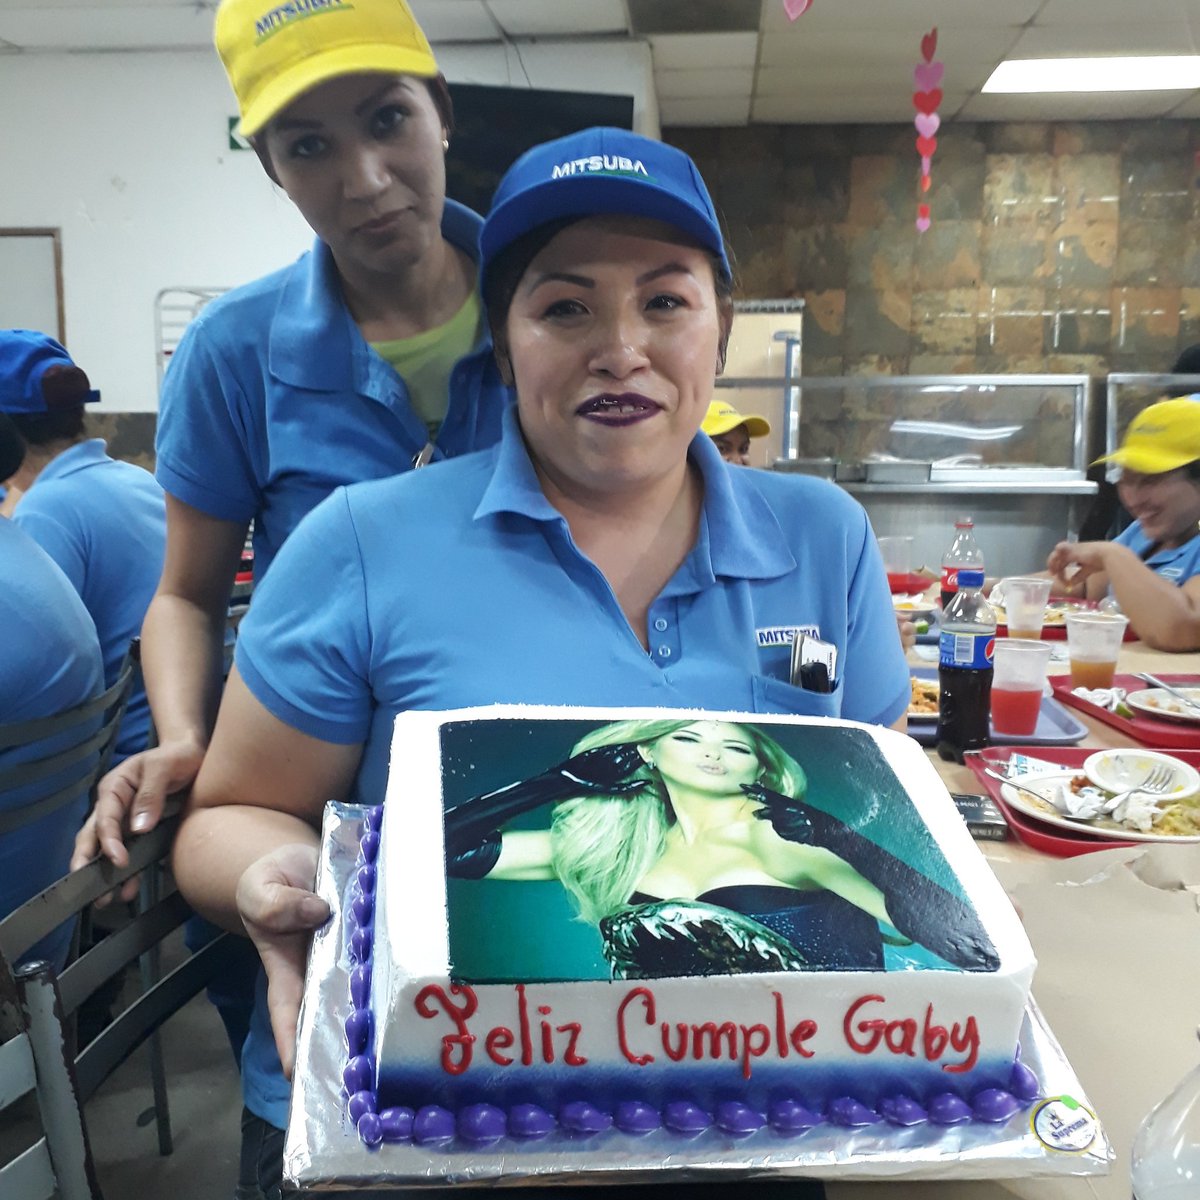 @GloriaTrevi mira mi pastel me encanto, te amo hermosa😍😍 @SergioDelAguila @amigosdegloria  besos 😘😘